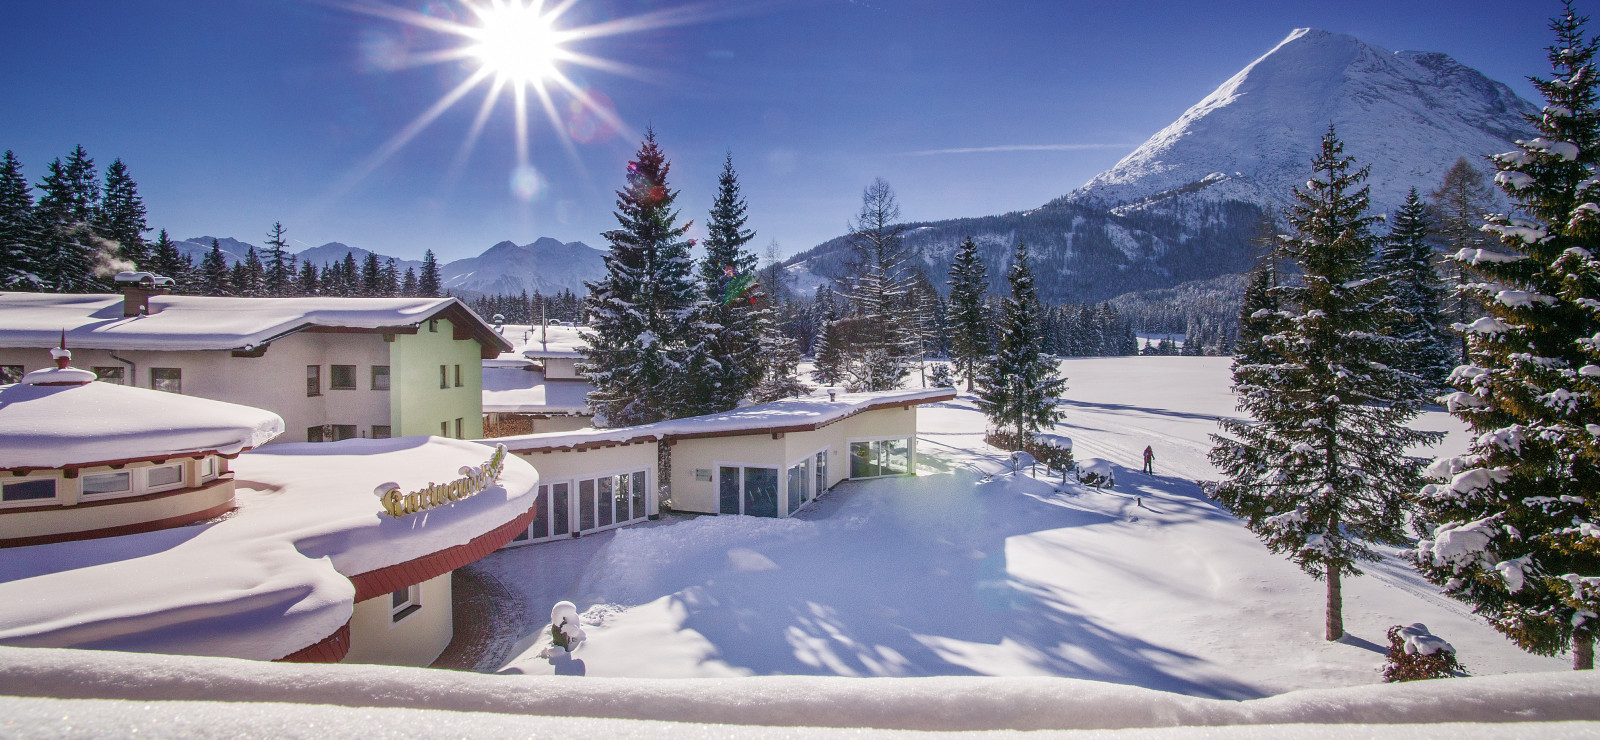 Alpenhotel Karwendel Bilder | Bild 1